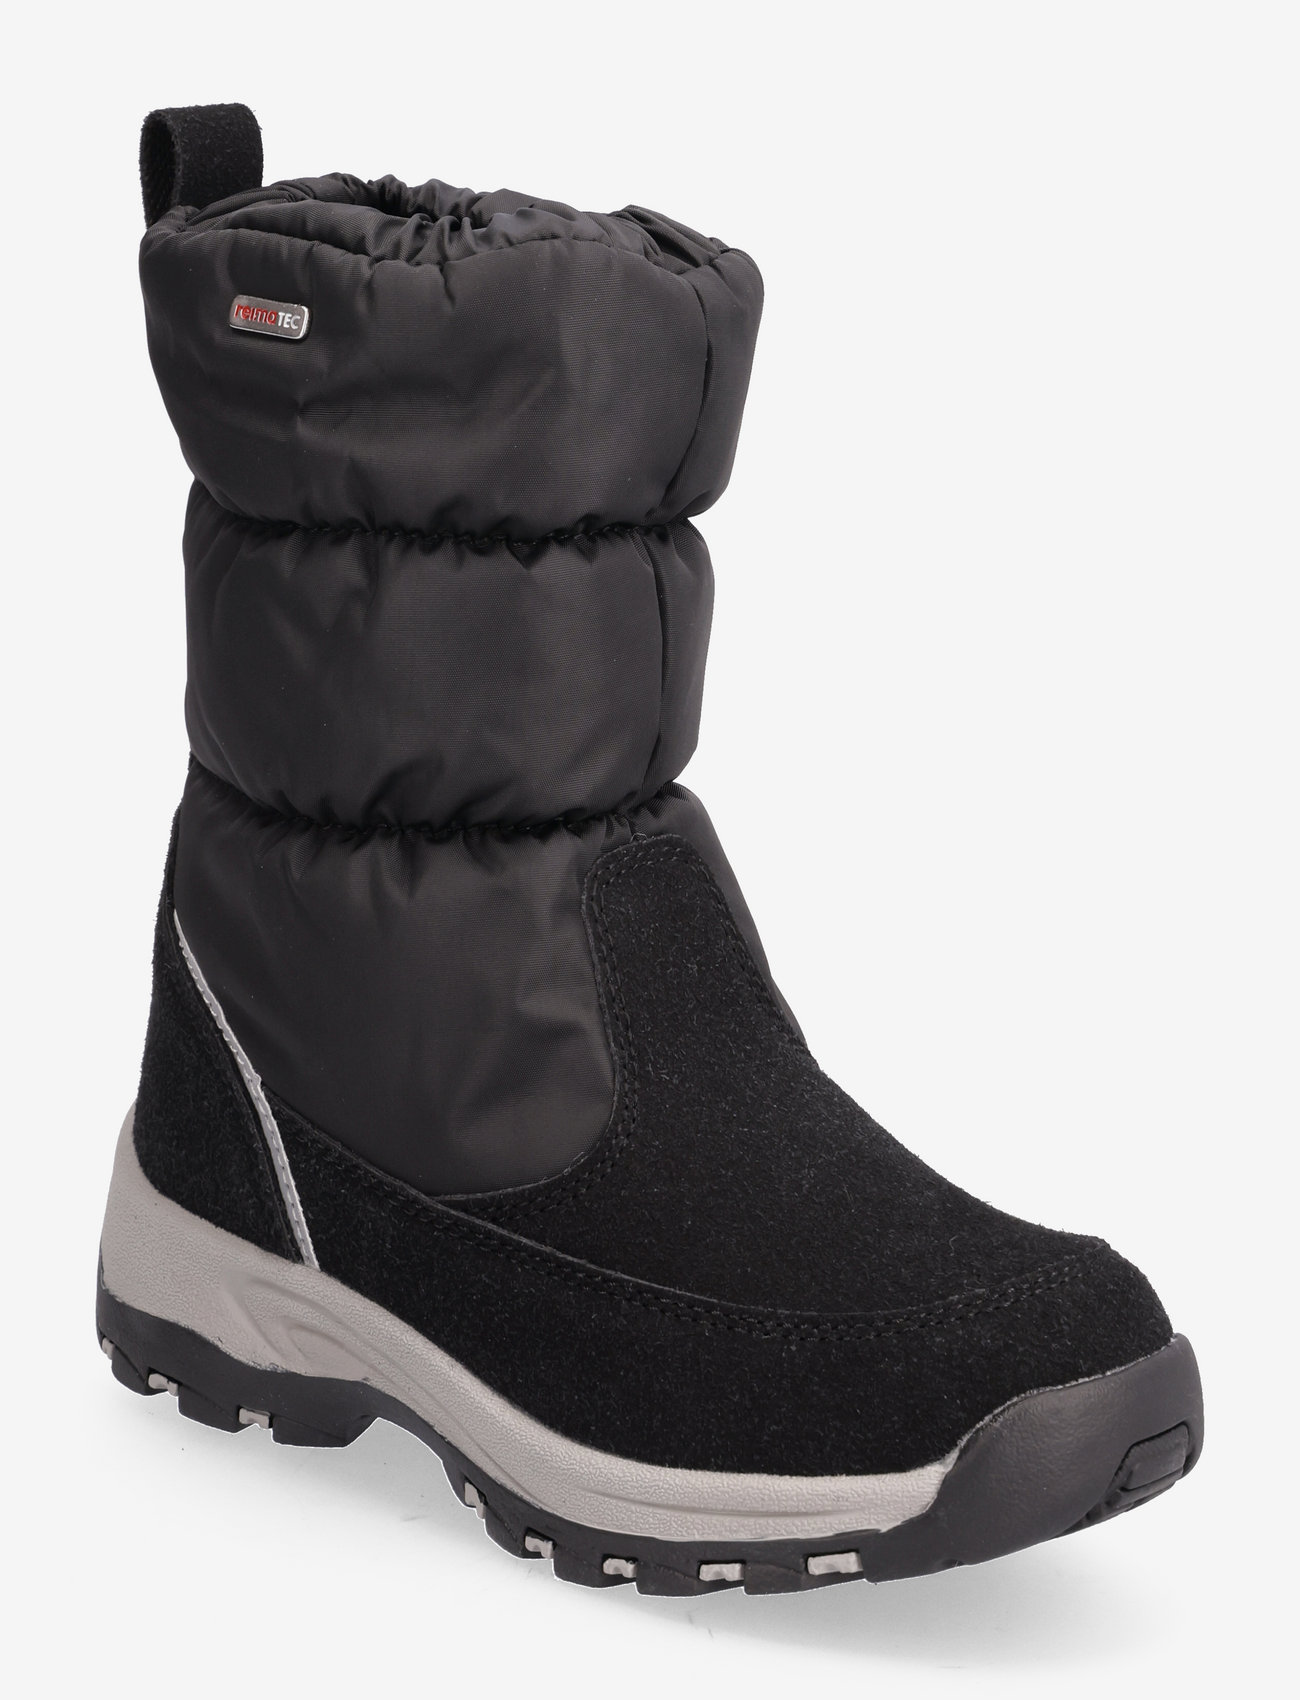 Reima - Reimatec winter boots, Vimpeli - black - 0